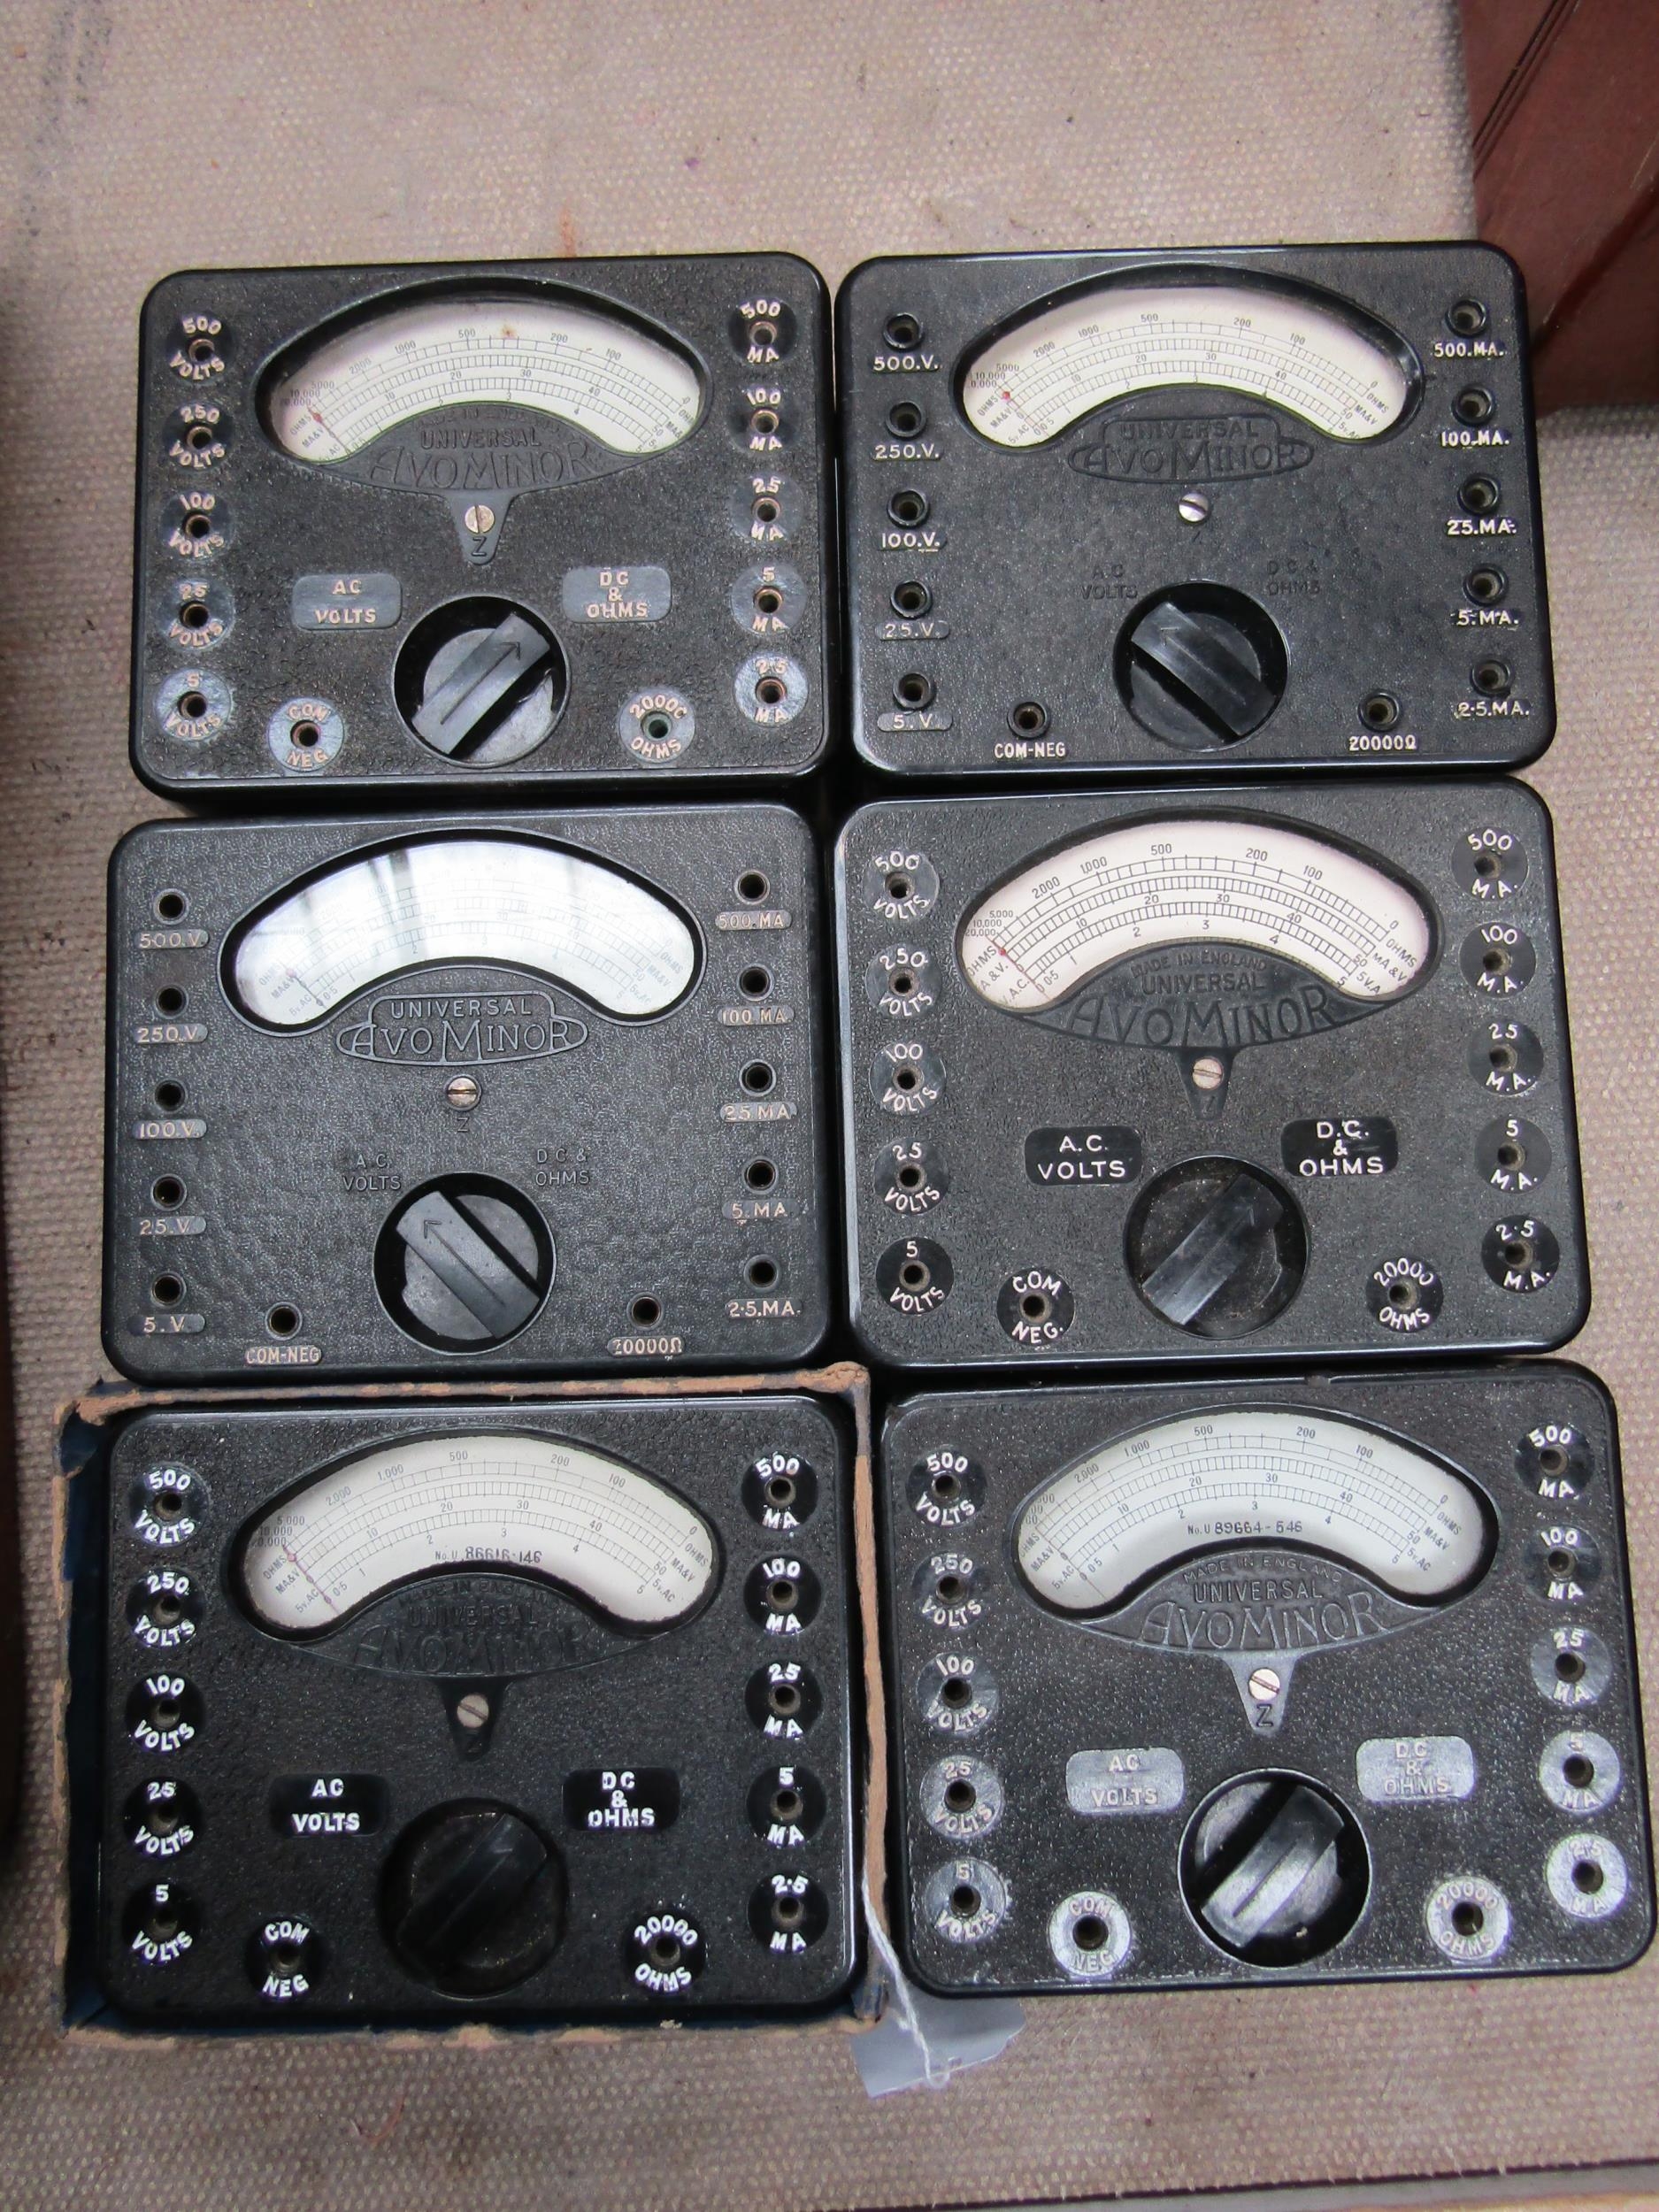 Six Universal Avominor model 1 multimeters, serial numbers U.120596-652, U.76386-445, U.87619-246,